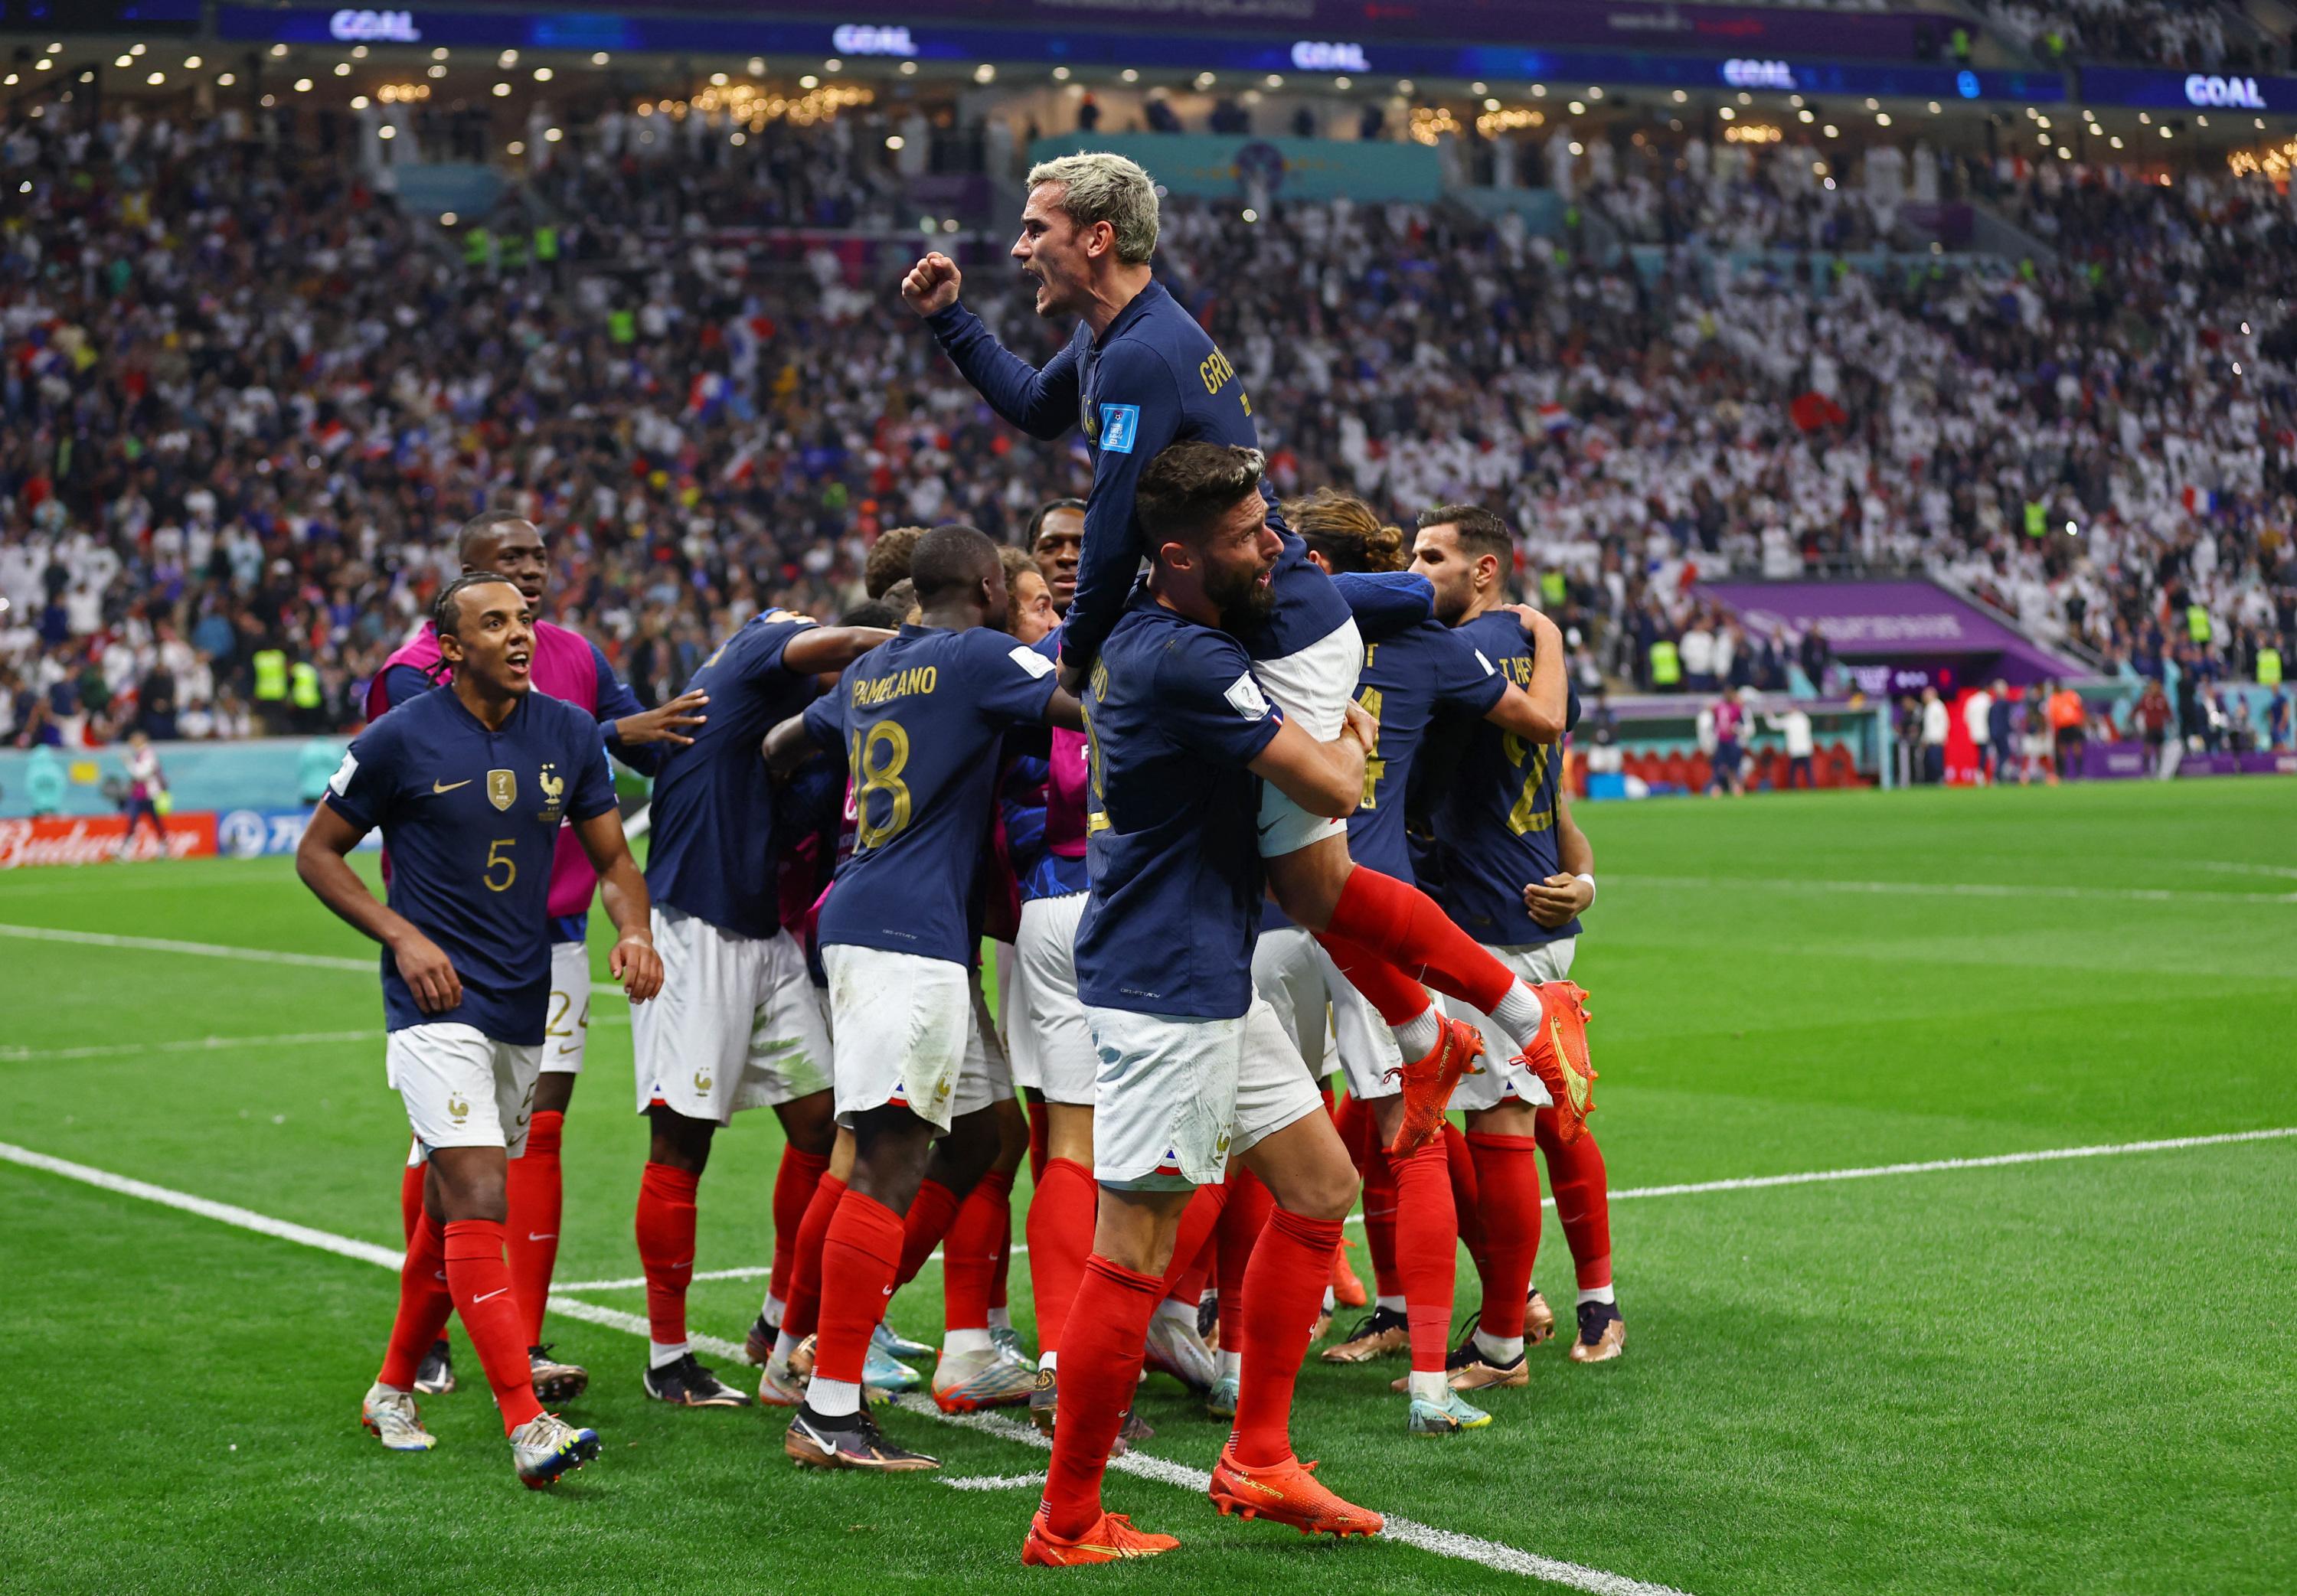 Mondial 2018: la France attend le retour de ses champions du monde -  Challenges